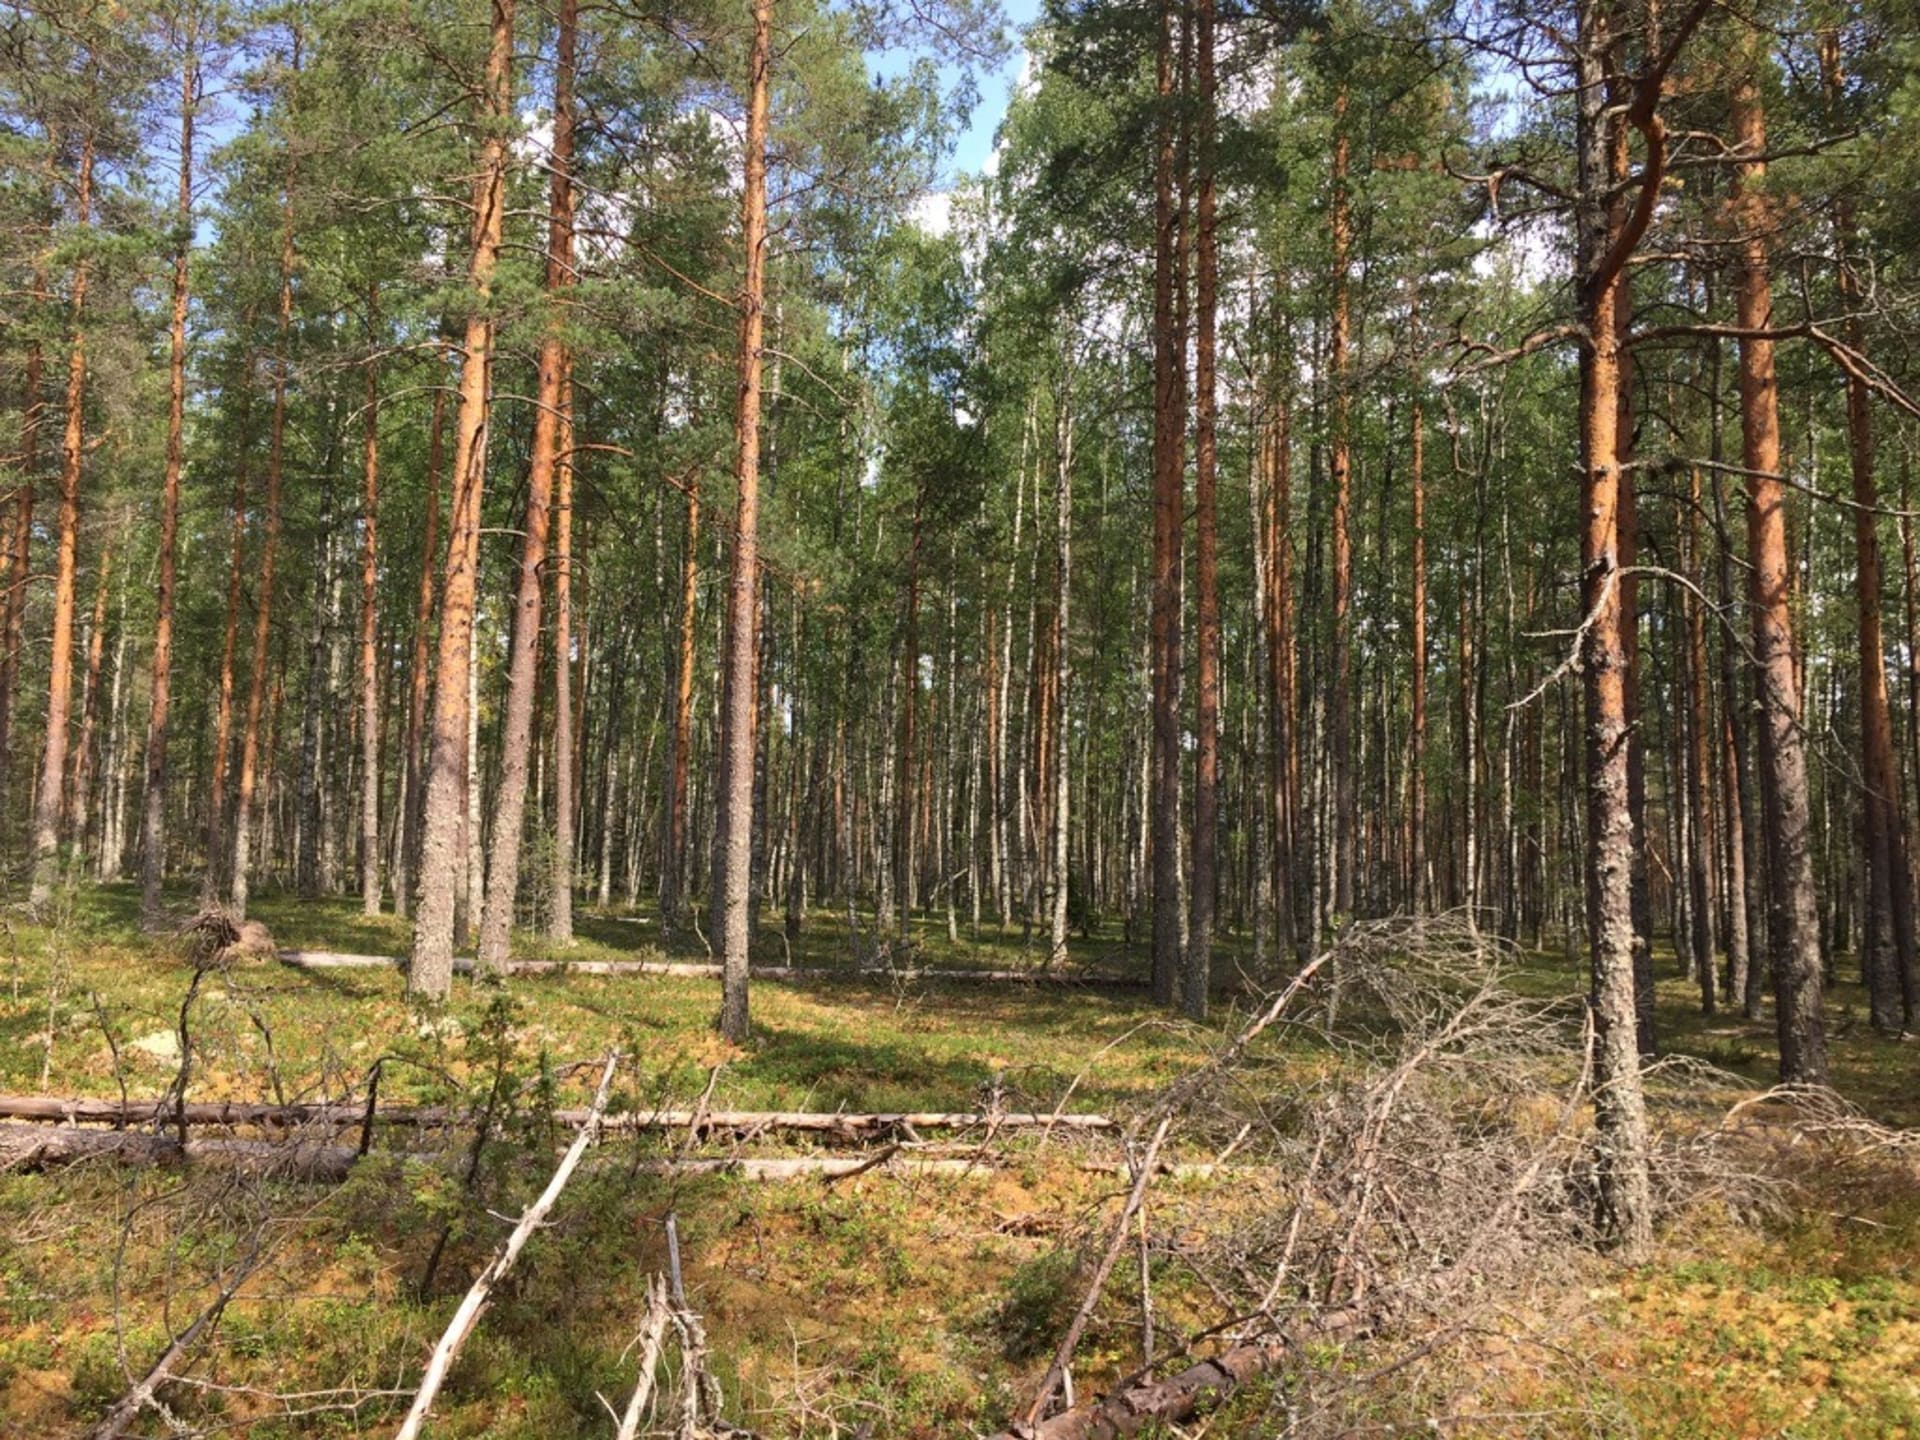 Finnish pine forest